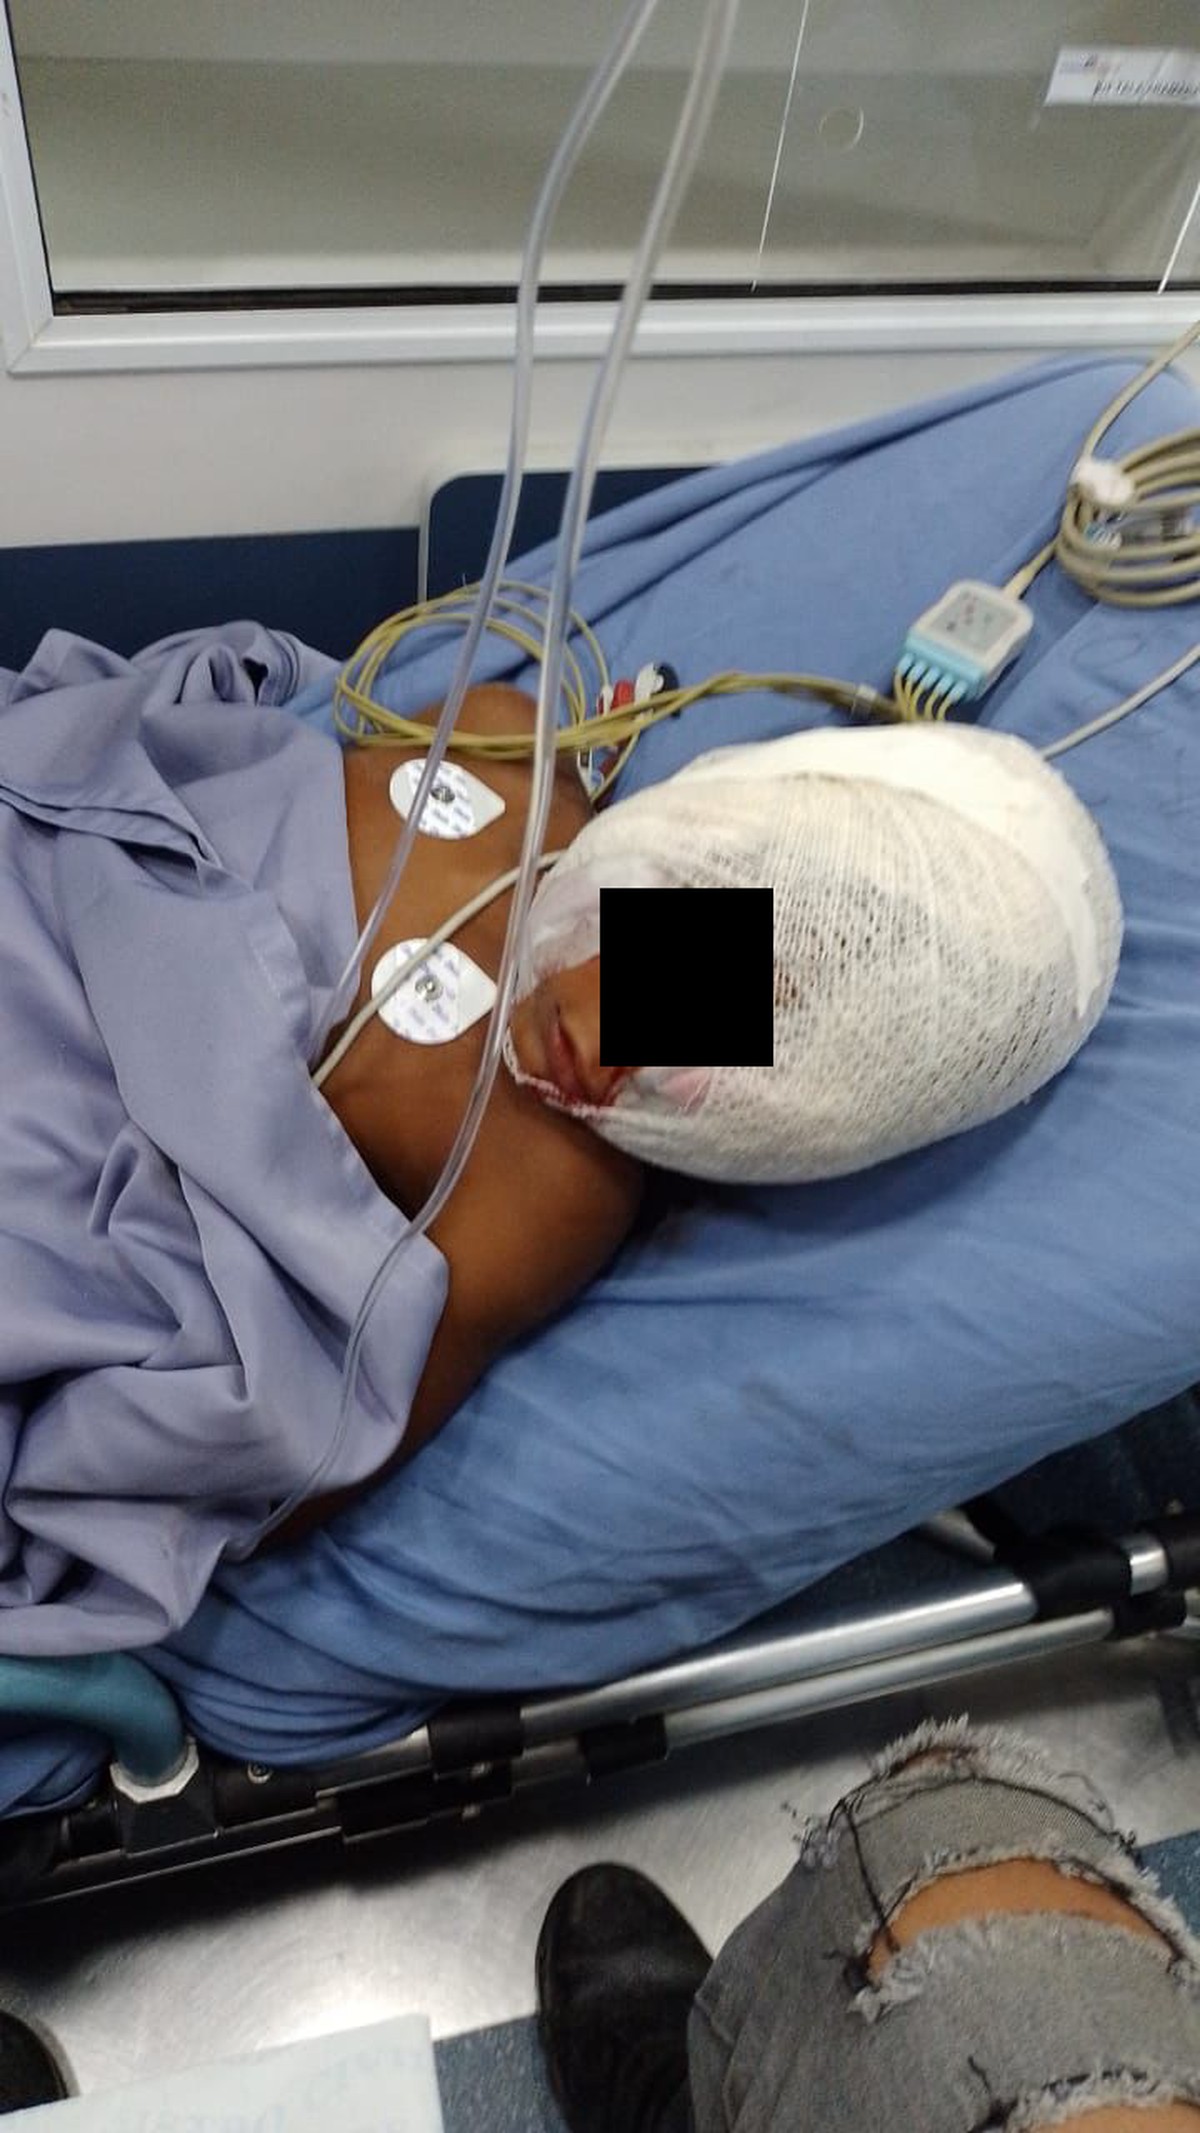 Menino de 5 anos é atacado por pitbull em São Pedro da Aldeia | Região dos Lagos